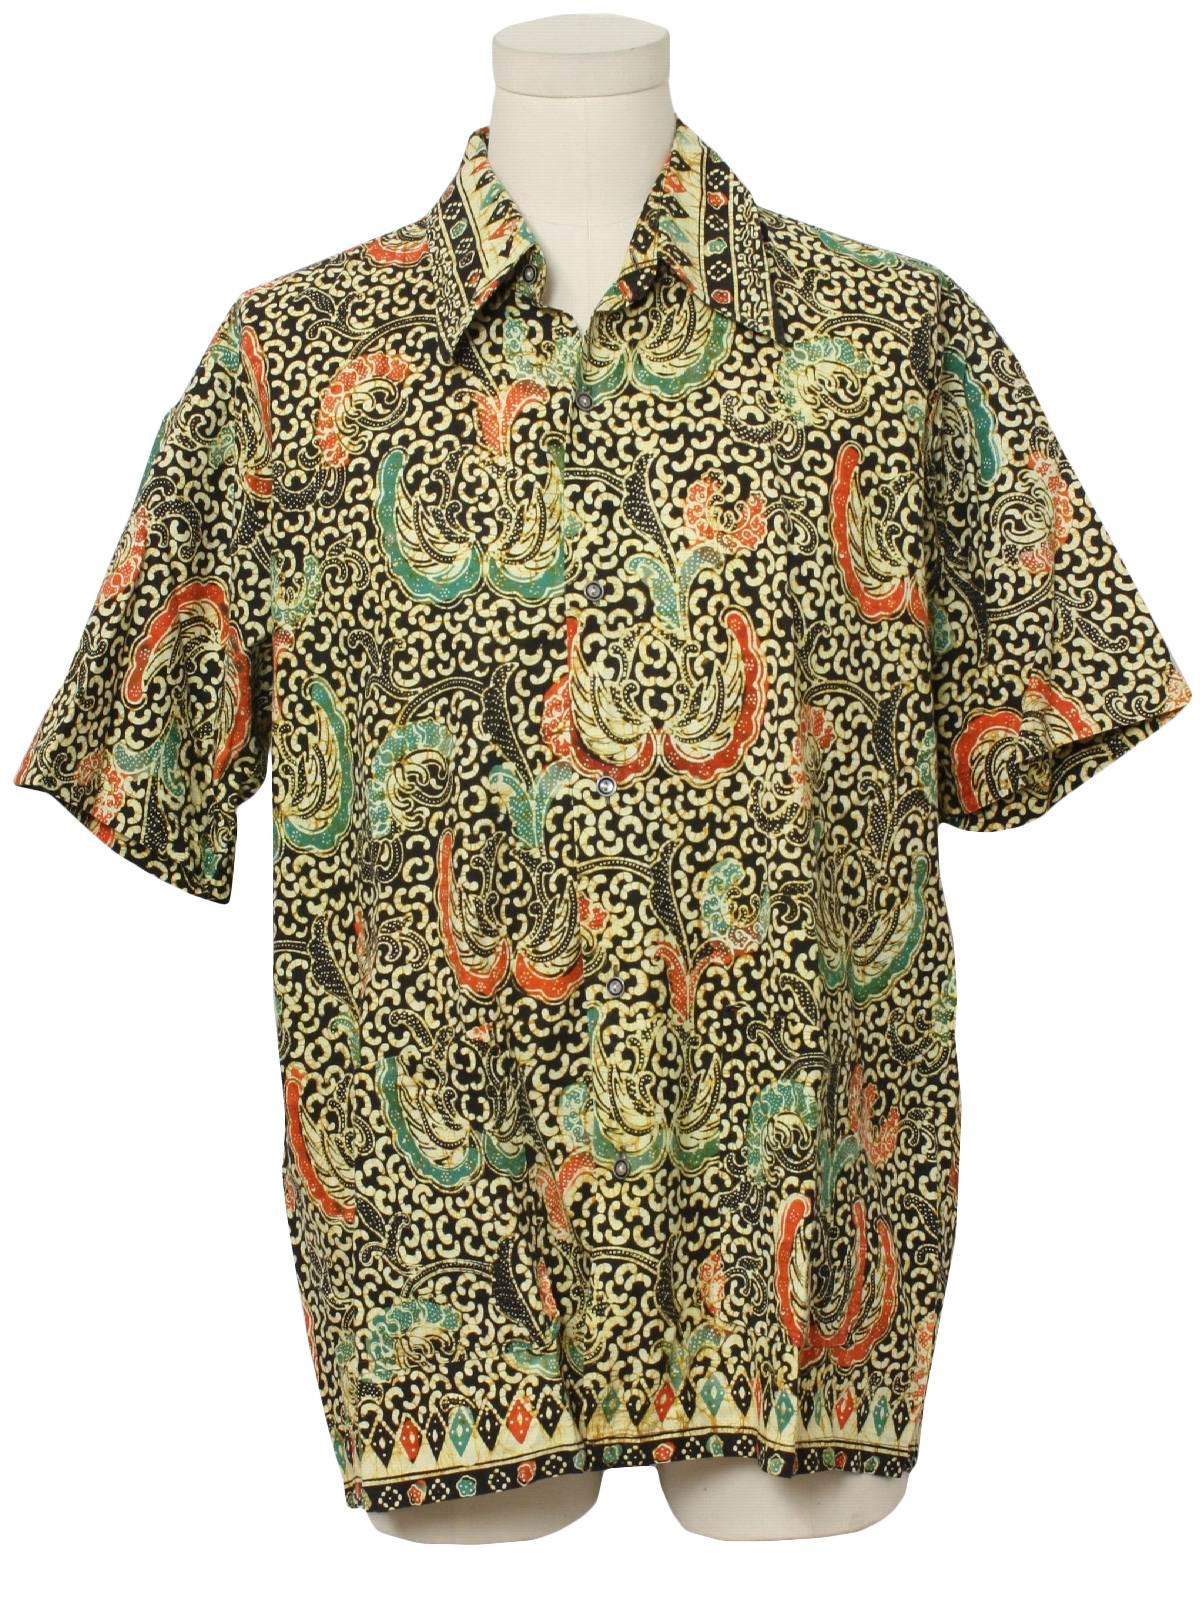 1970 s Vintage Jawa  Batik  Indonesia  Hippie Shirt  70s 